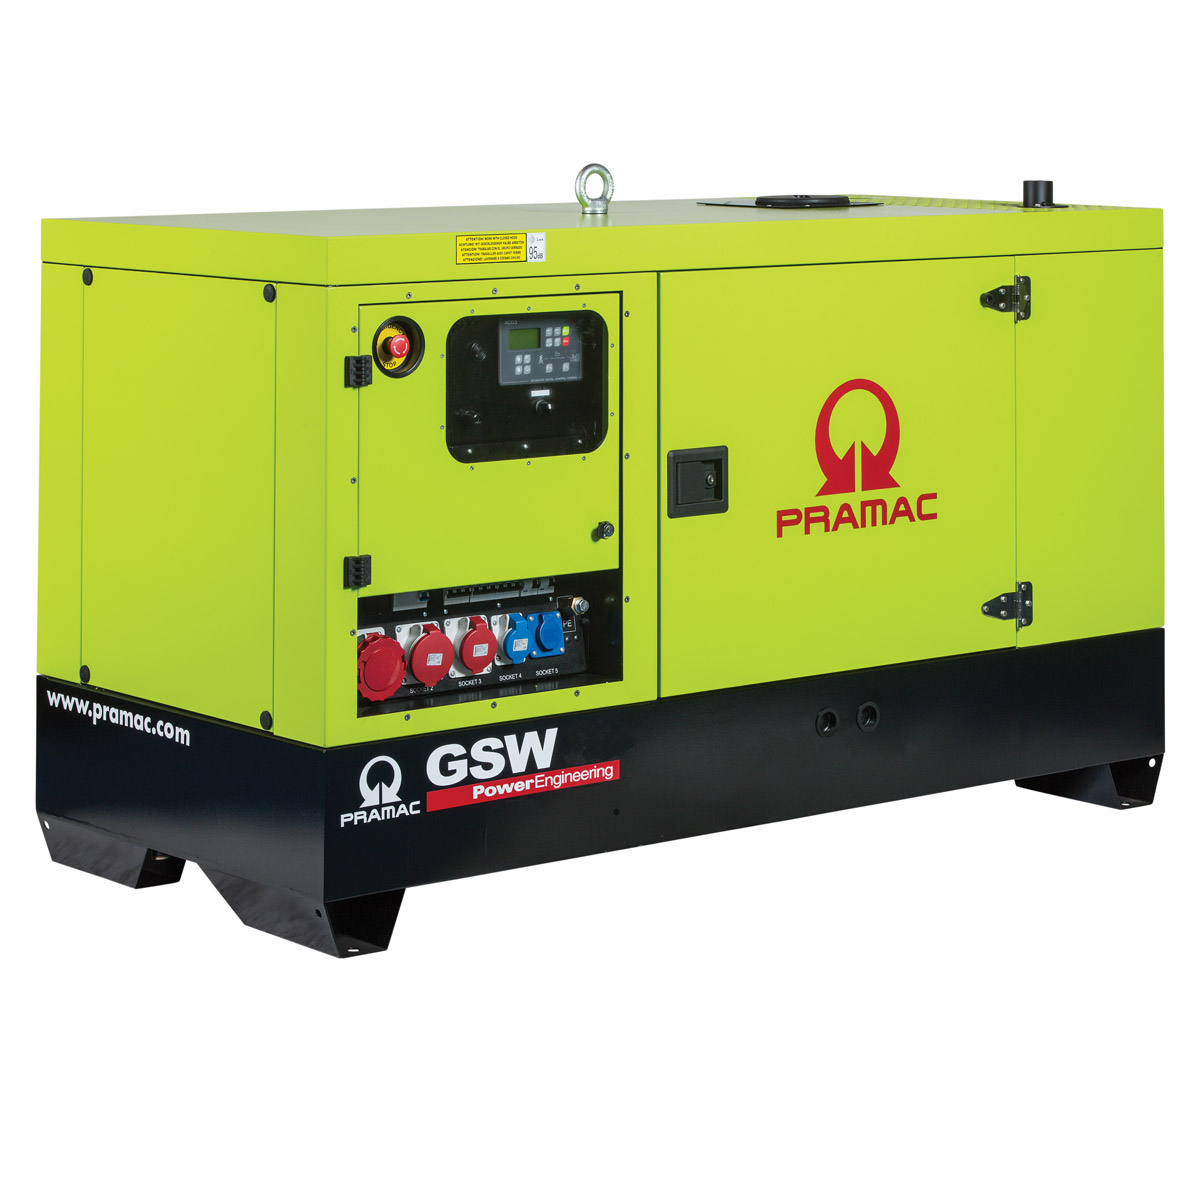 Stromerzeuger GSW 10 Pramac